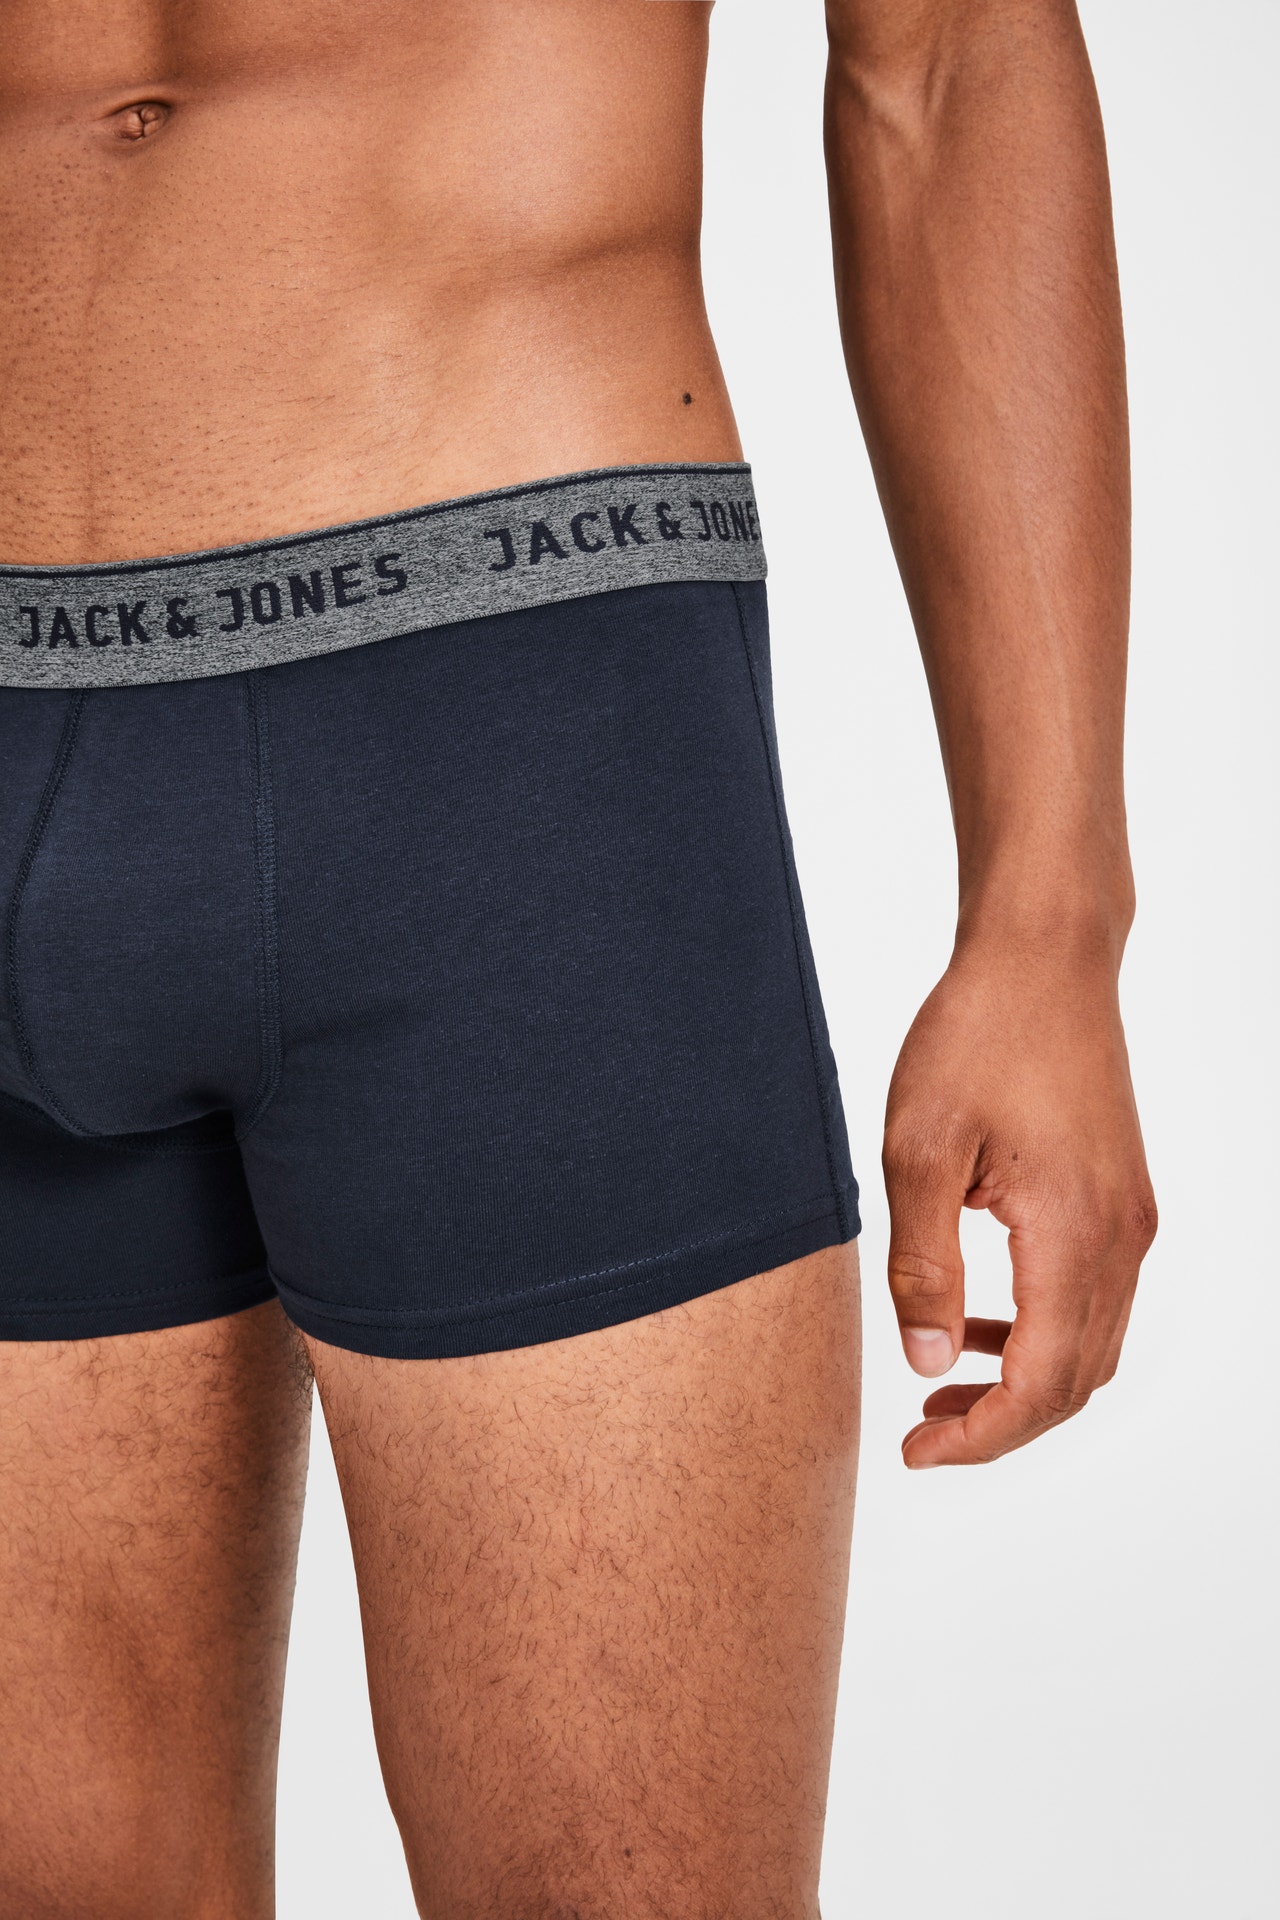 Jack & Jones Paquete de 2 Boxers -Navy Blazer - 12138239